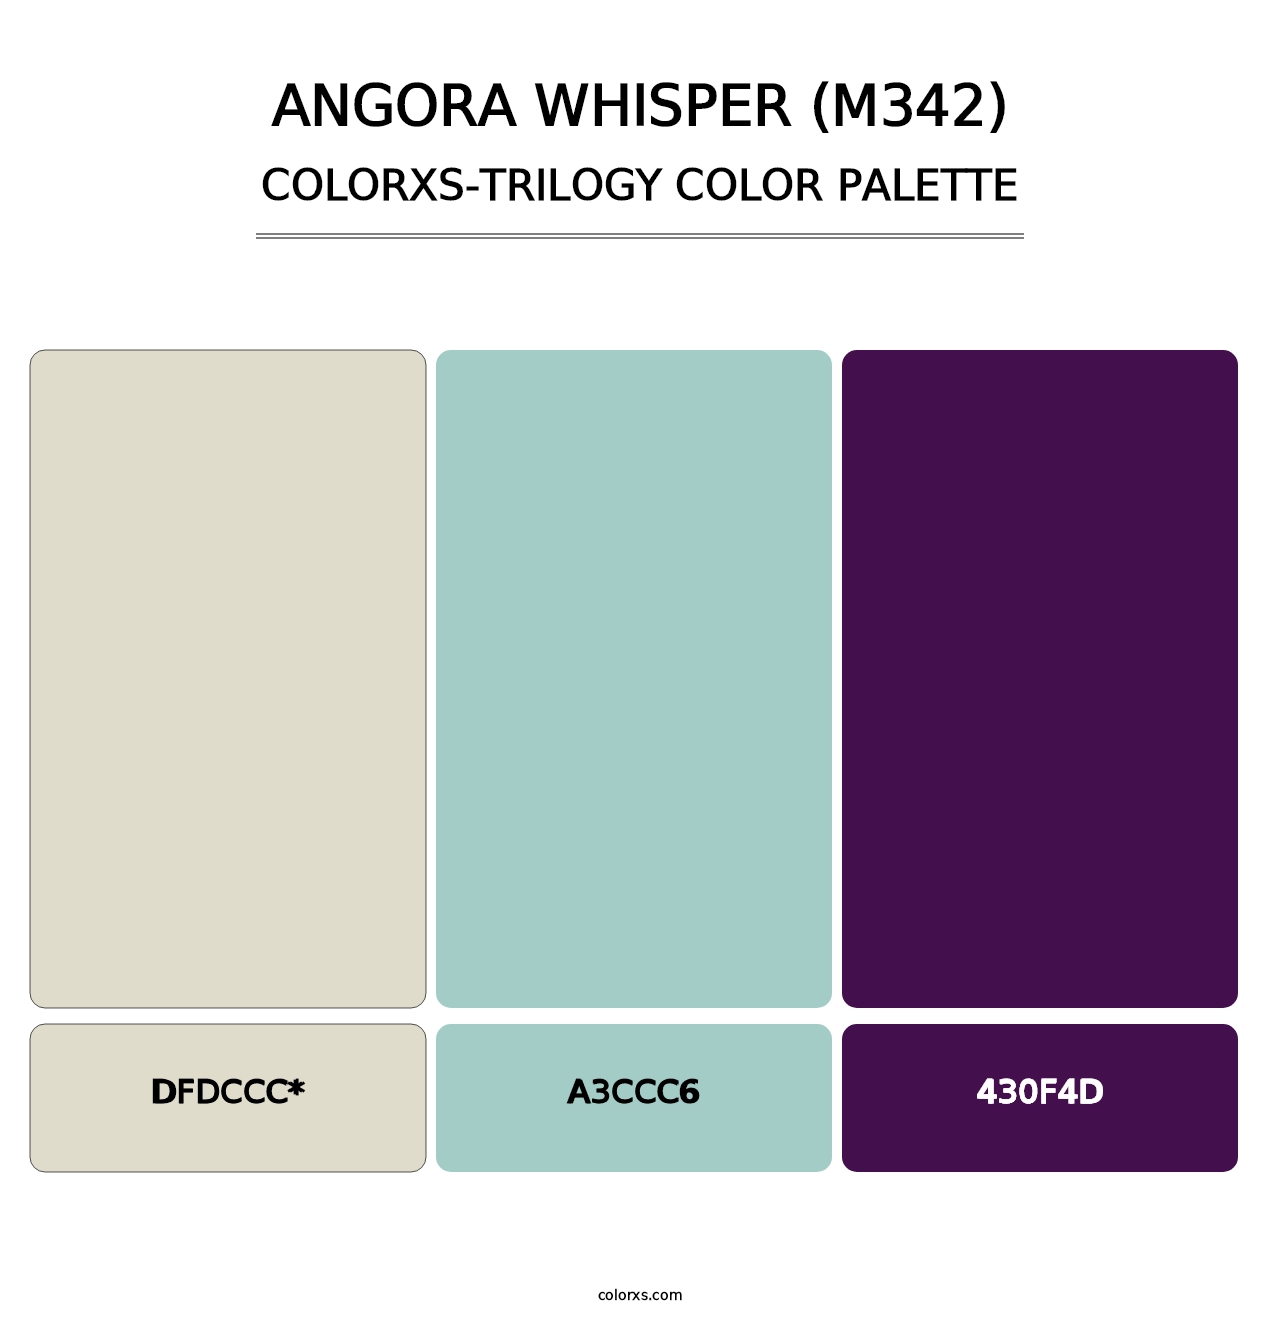 Angora Whisper (M342) - Colorxs Trilogy Palette